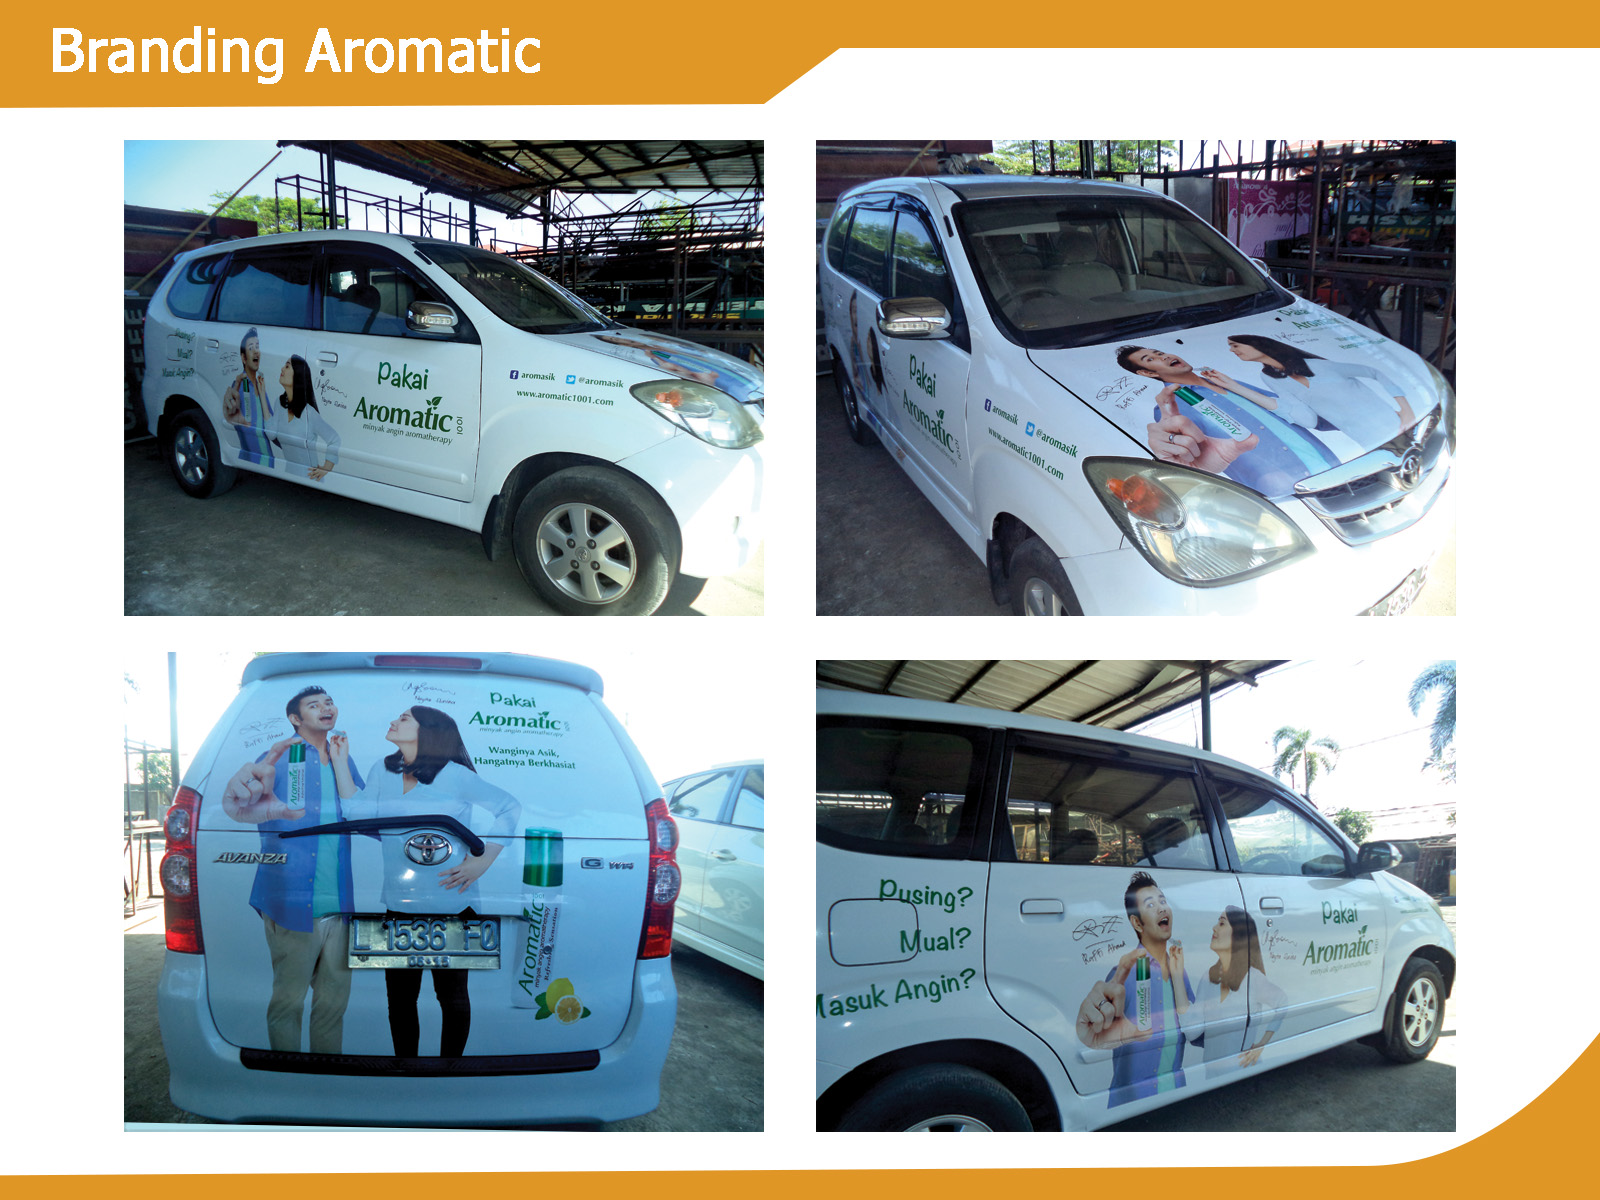 Branding Toyota Avanza
Aromatic